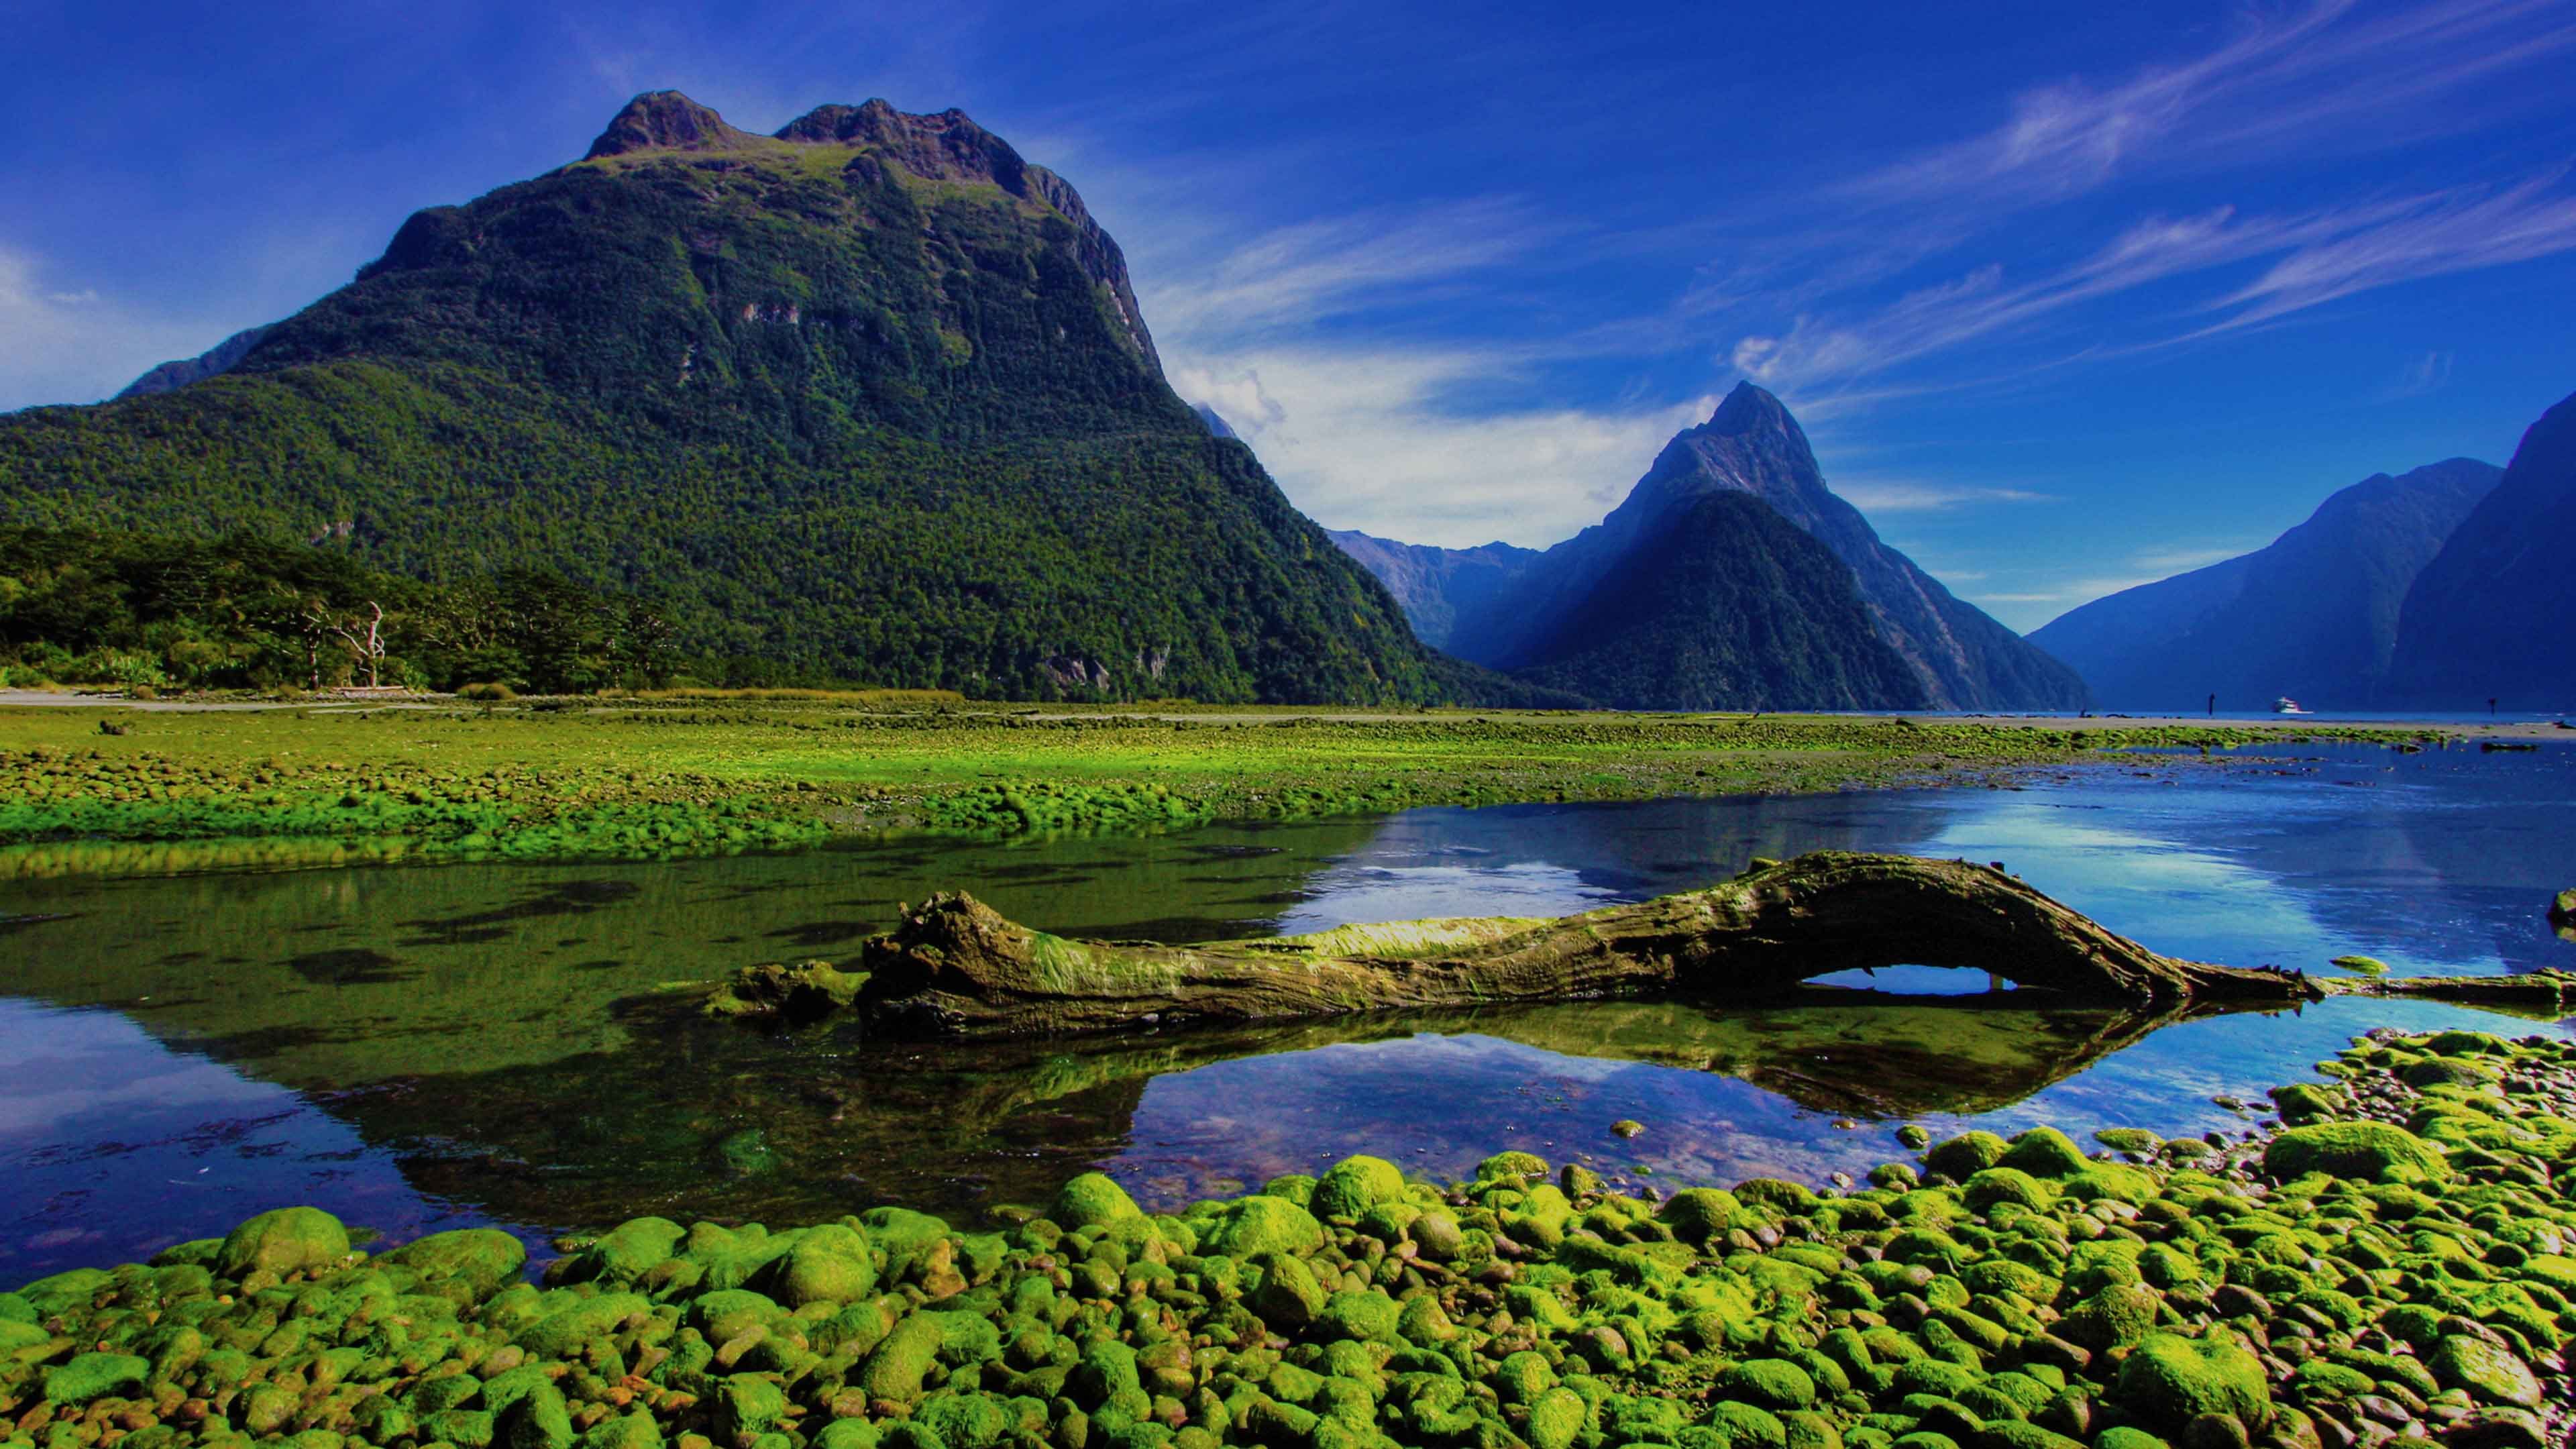 Chudesa. Фьорд Милфорд-саунд. Южный остров, новая Зеландия. Новая Зеландия (New Zealand). Национальный парк Фьордленд Флора.